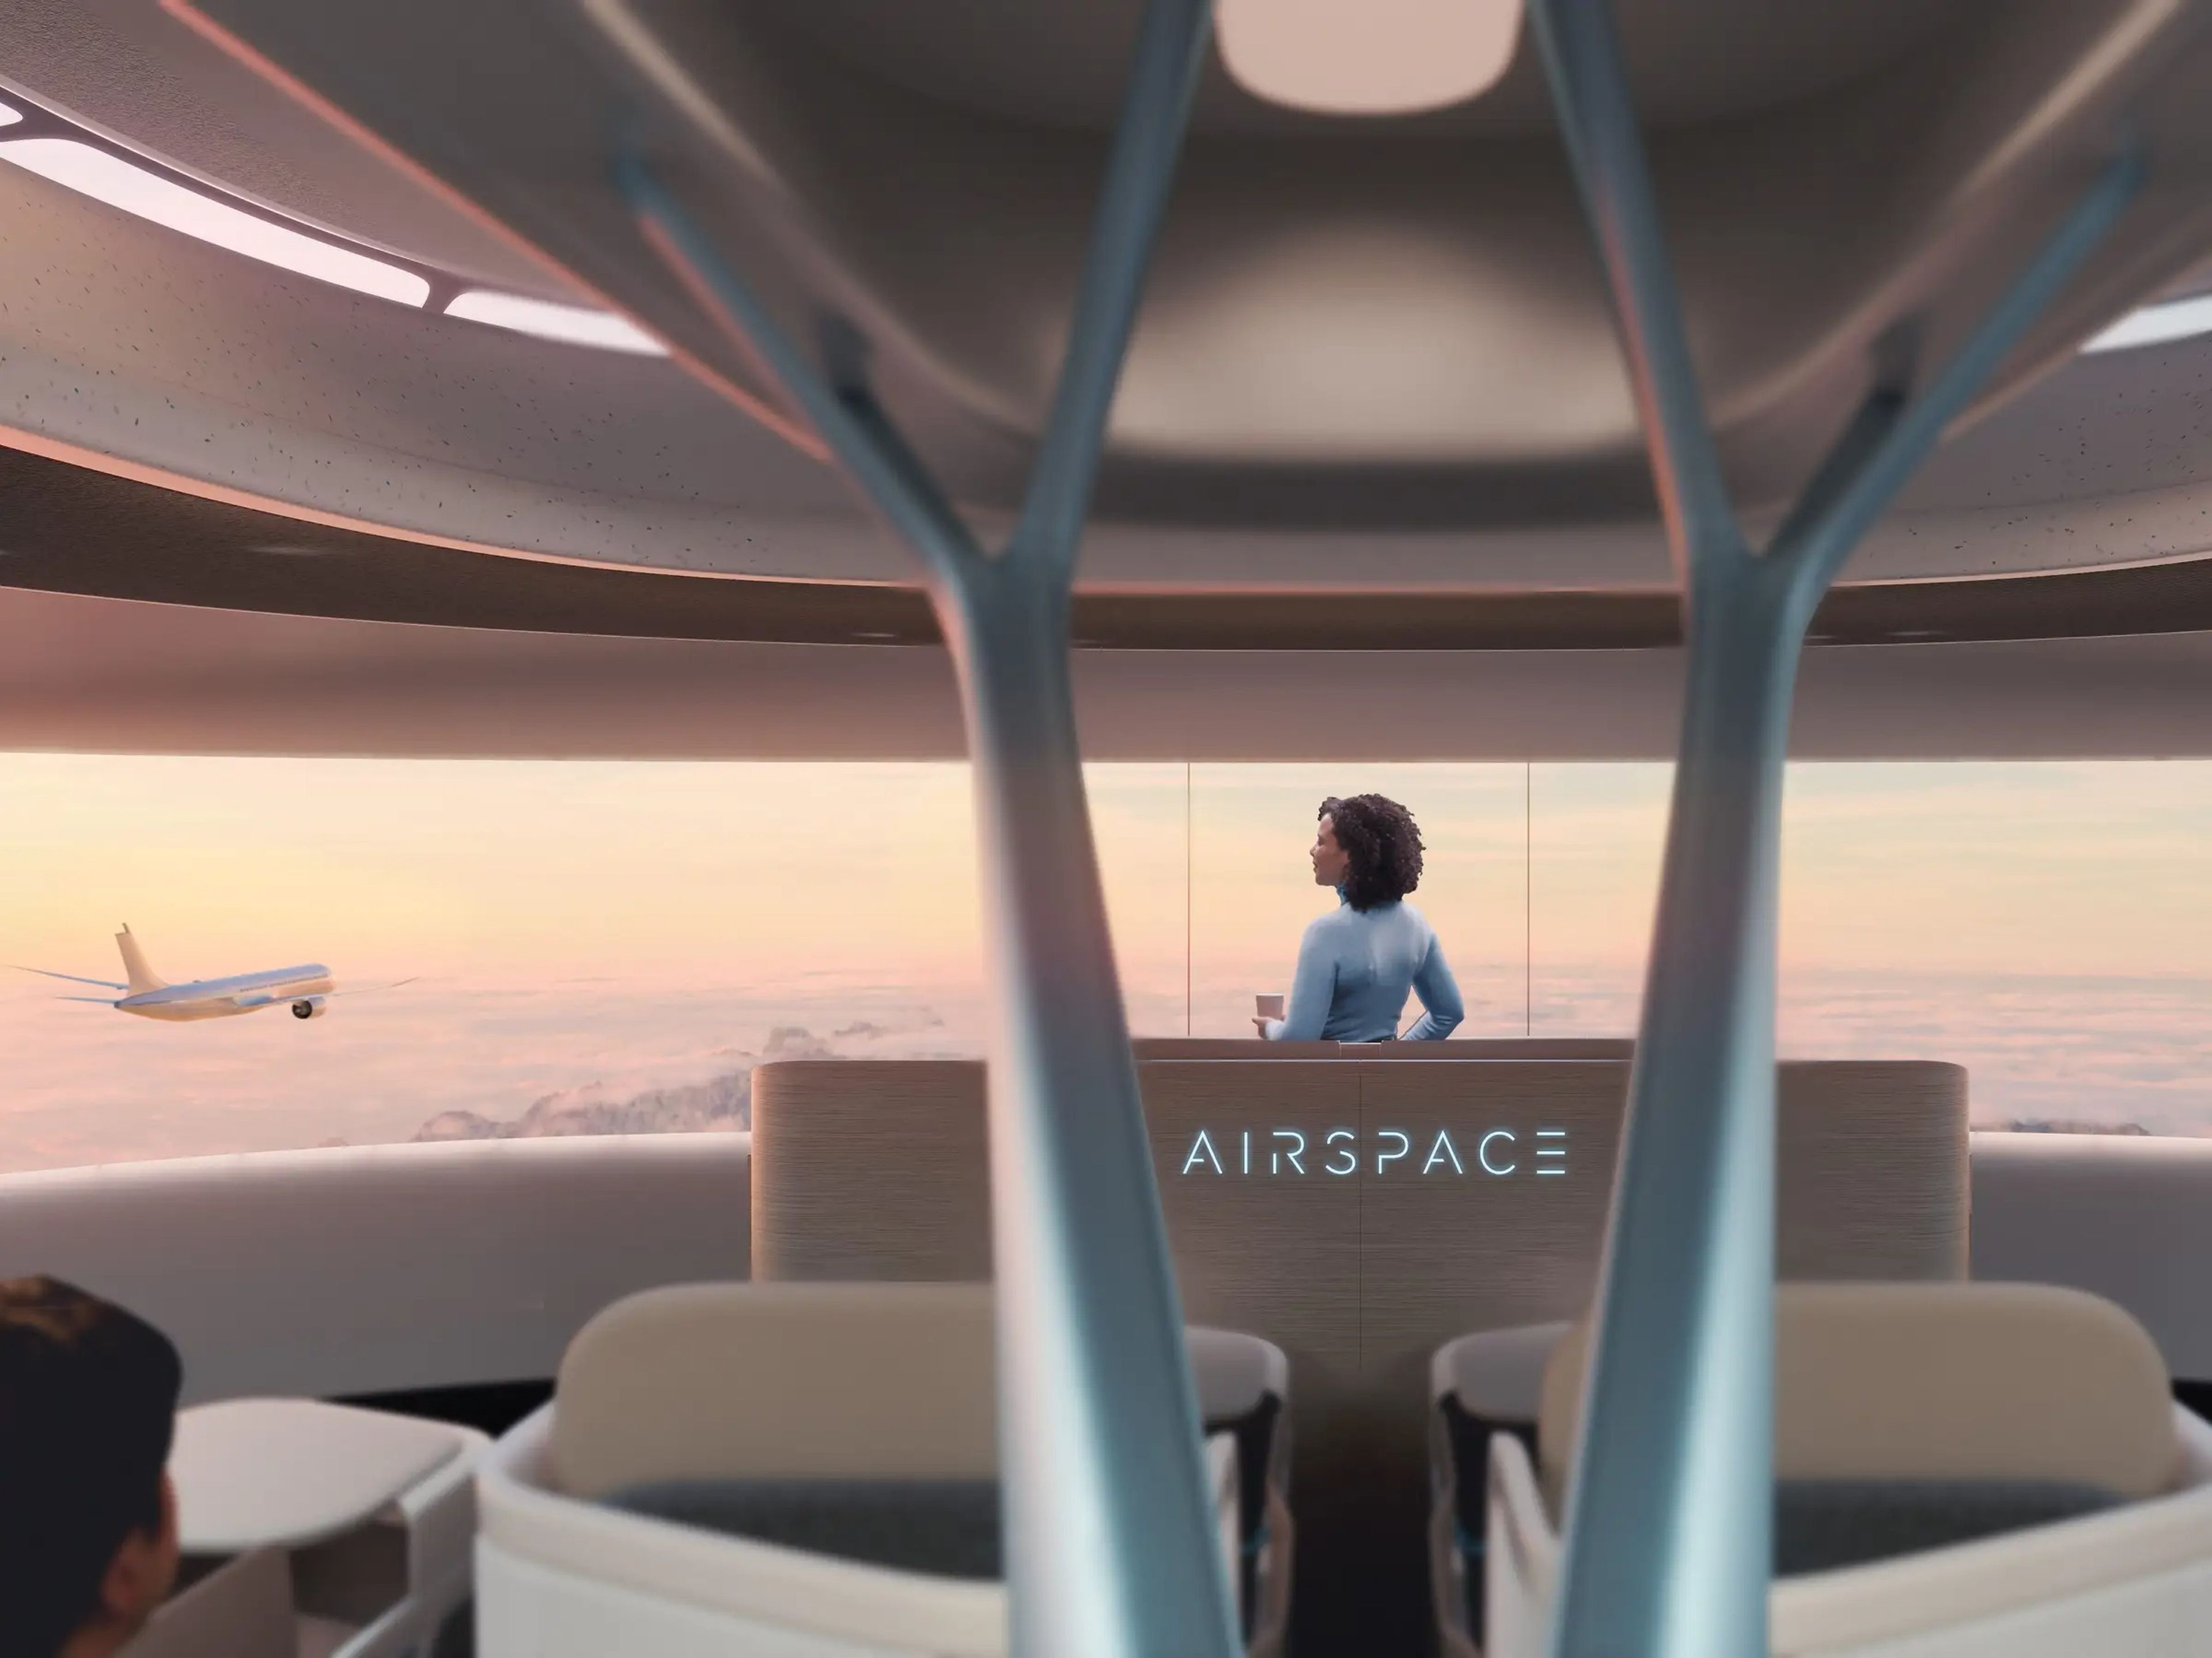 La cabina puede contribuir entre un 10 y un 20% al impacto medioambiental global del avión durante su ciclo de vida, según Airbus.